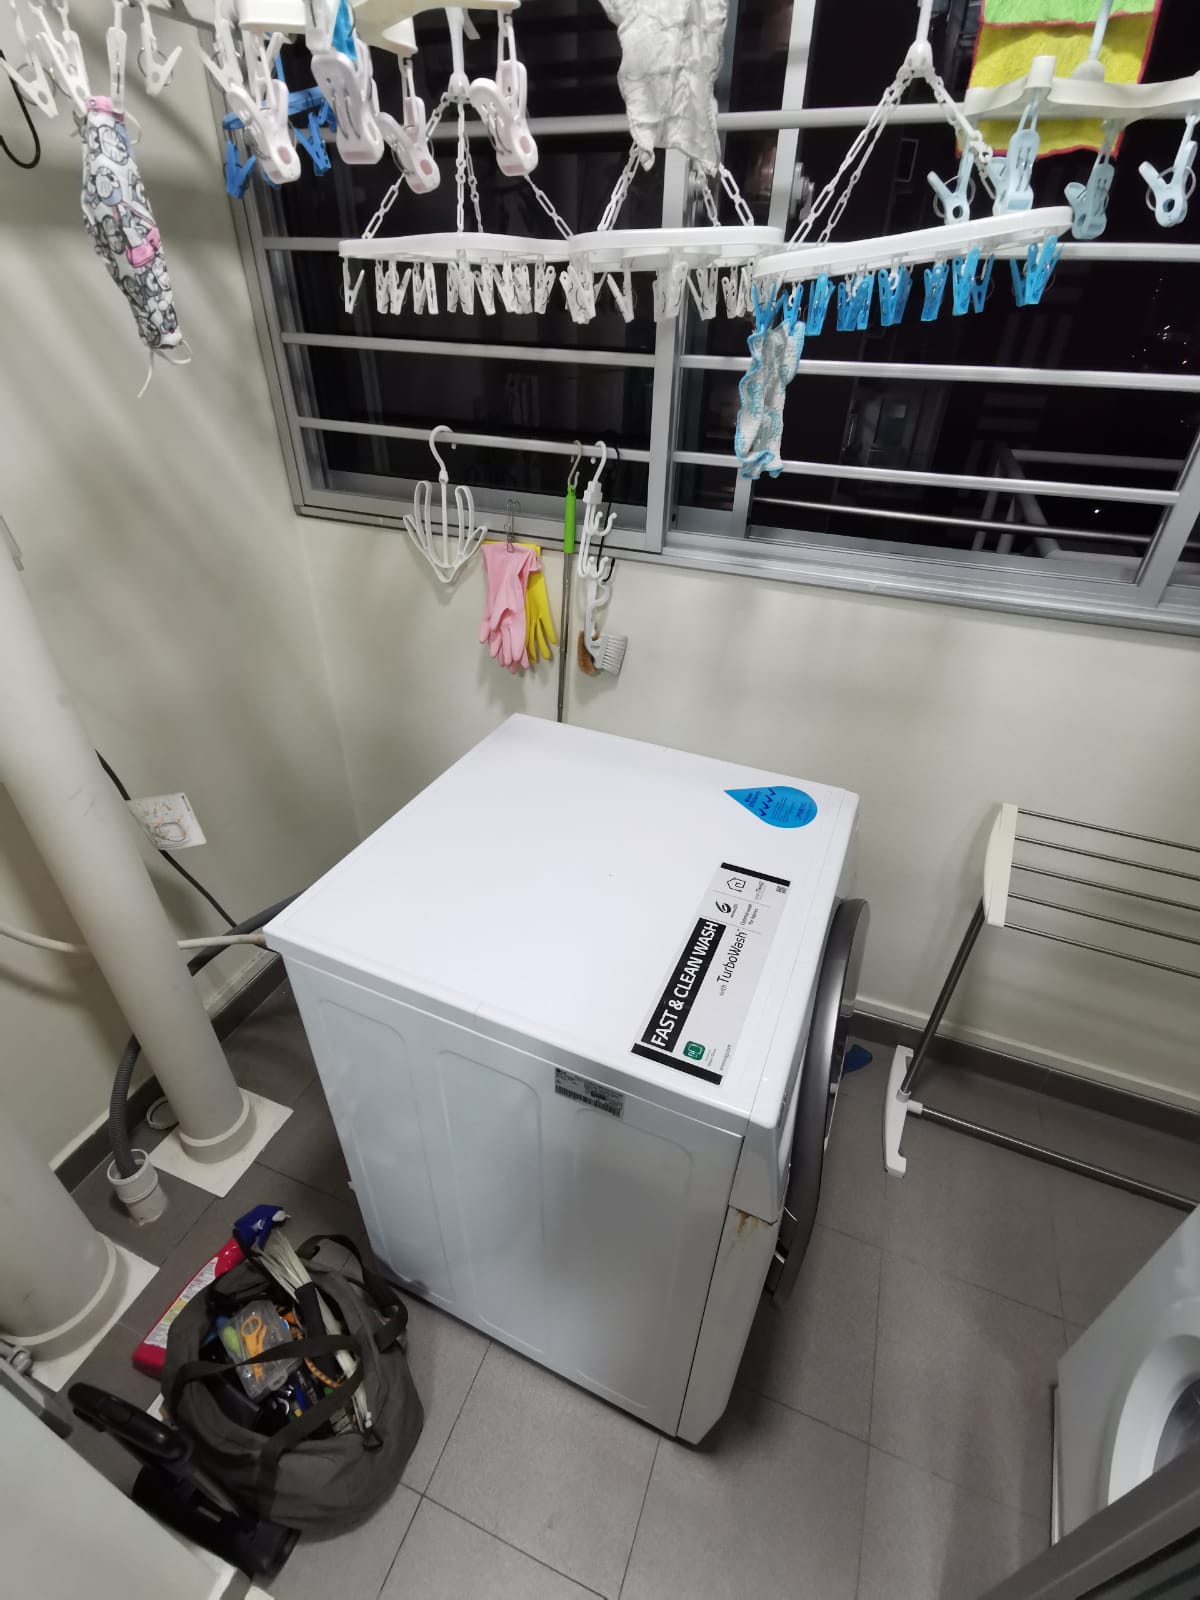 Basic Maintainance For Washing Machine 2